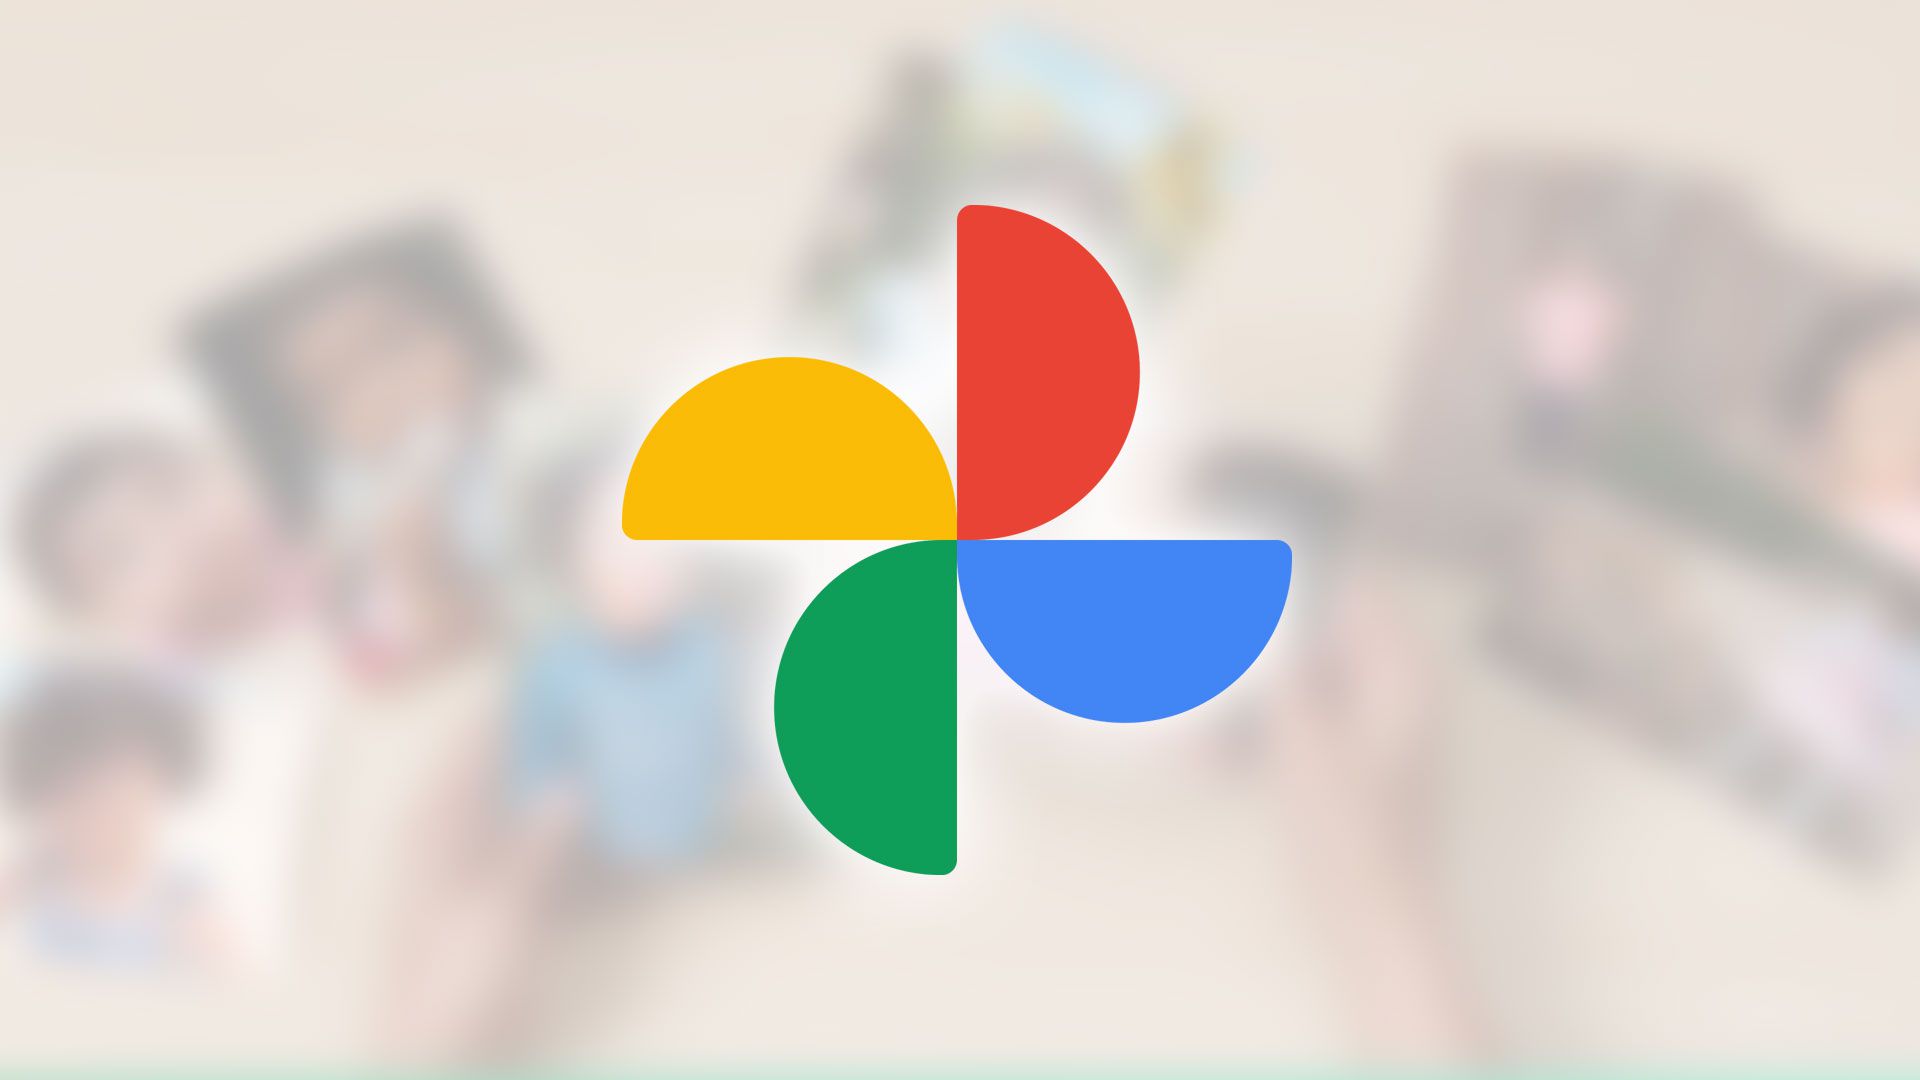 Google Fotos: conheça 6 alternativas ao serviço - Olhar Digital